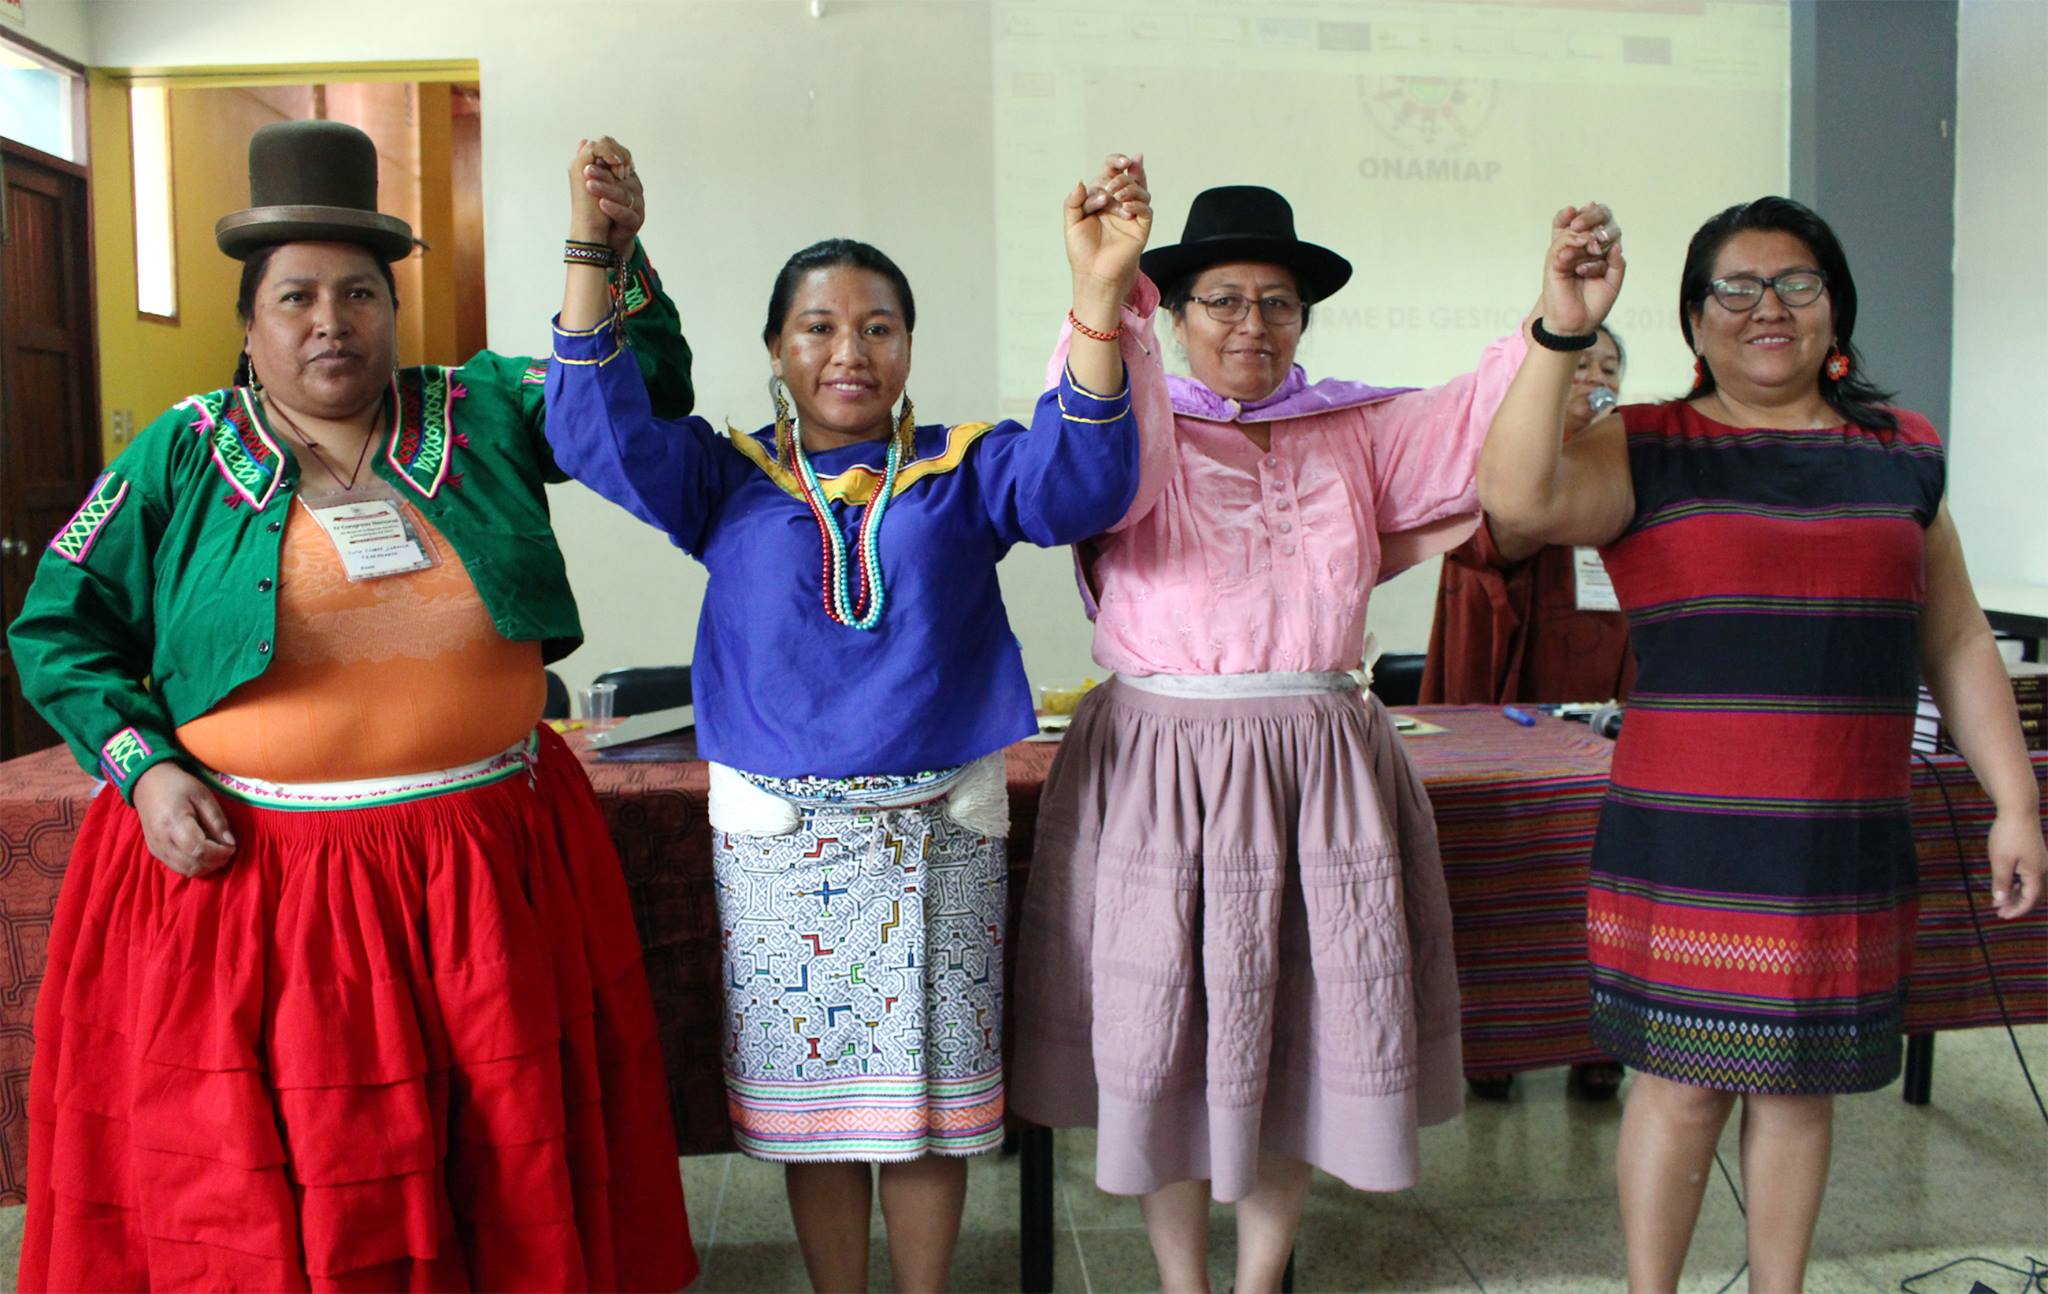 Mujeres indígenas de Latinoamérica se unen para proteger sus derechos